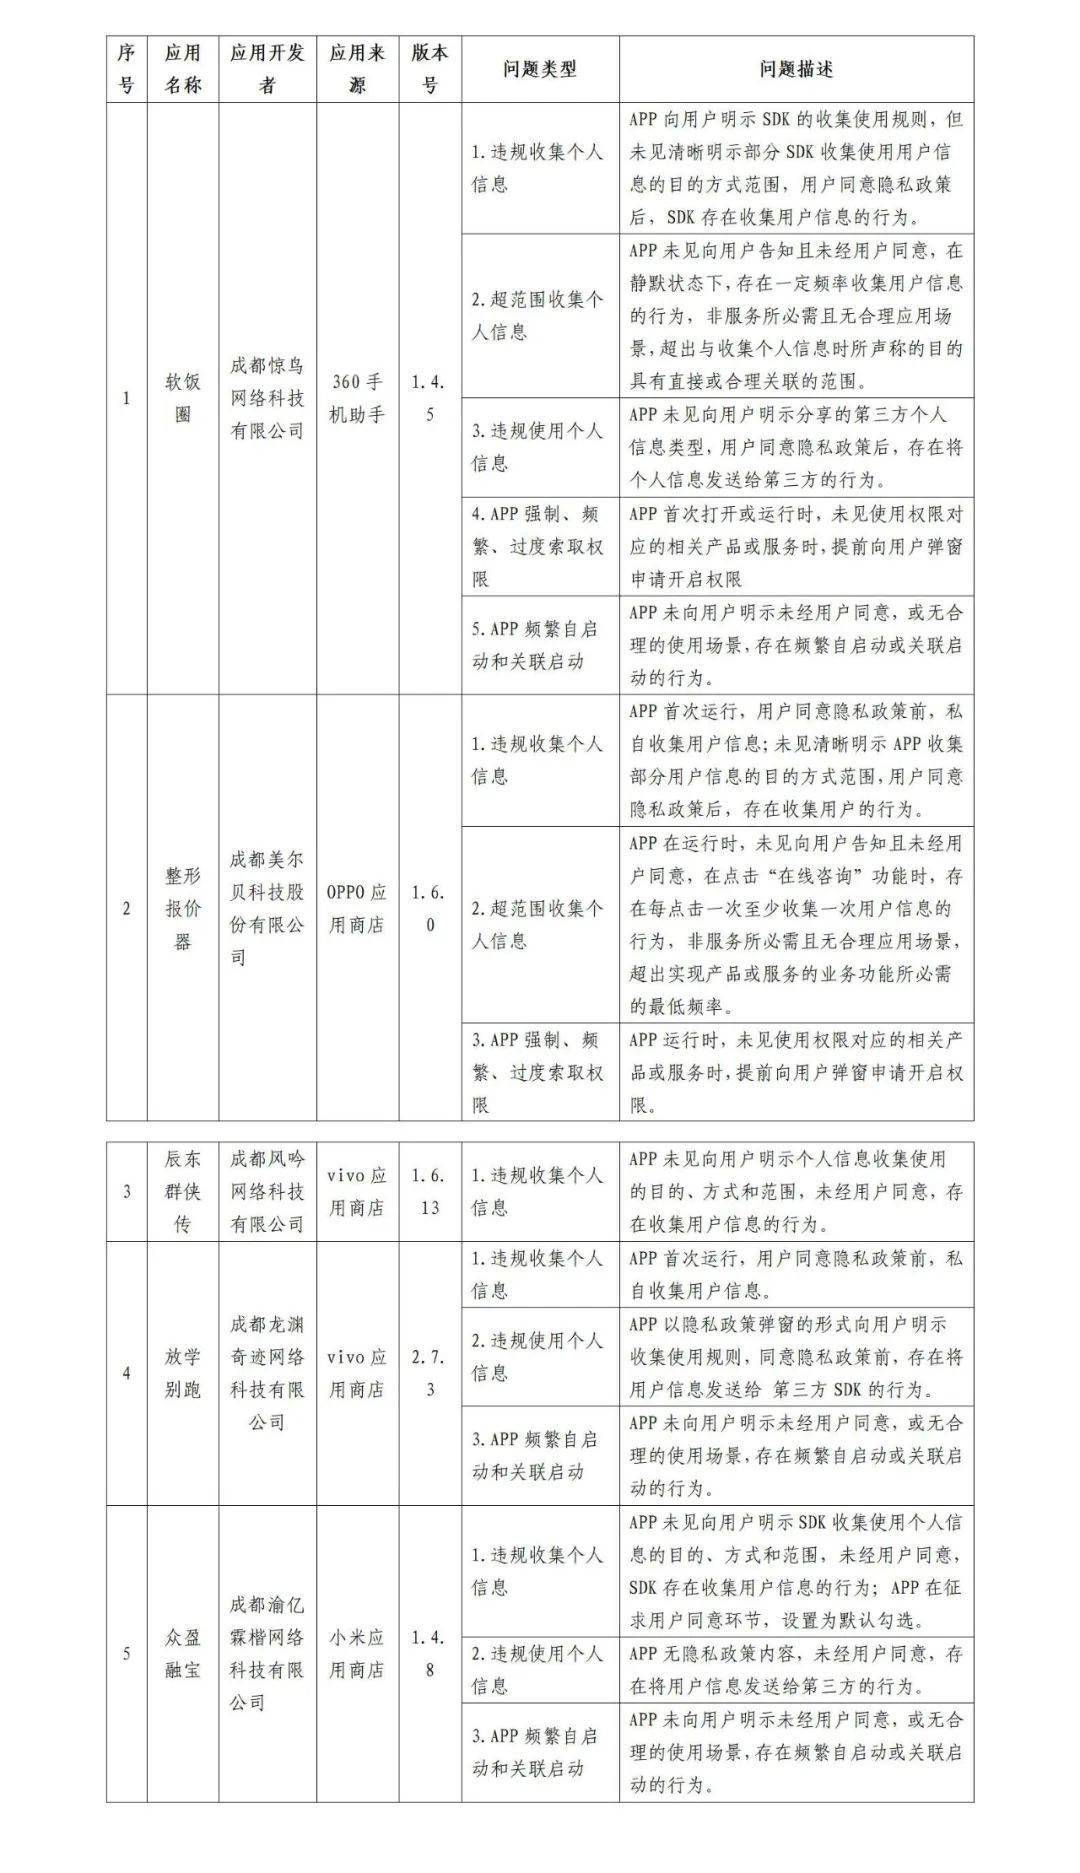 放学别跑苹果手机版:四川省通信管理局下架 5 款侵害用户权益的 App